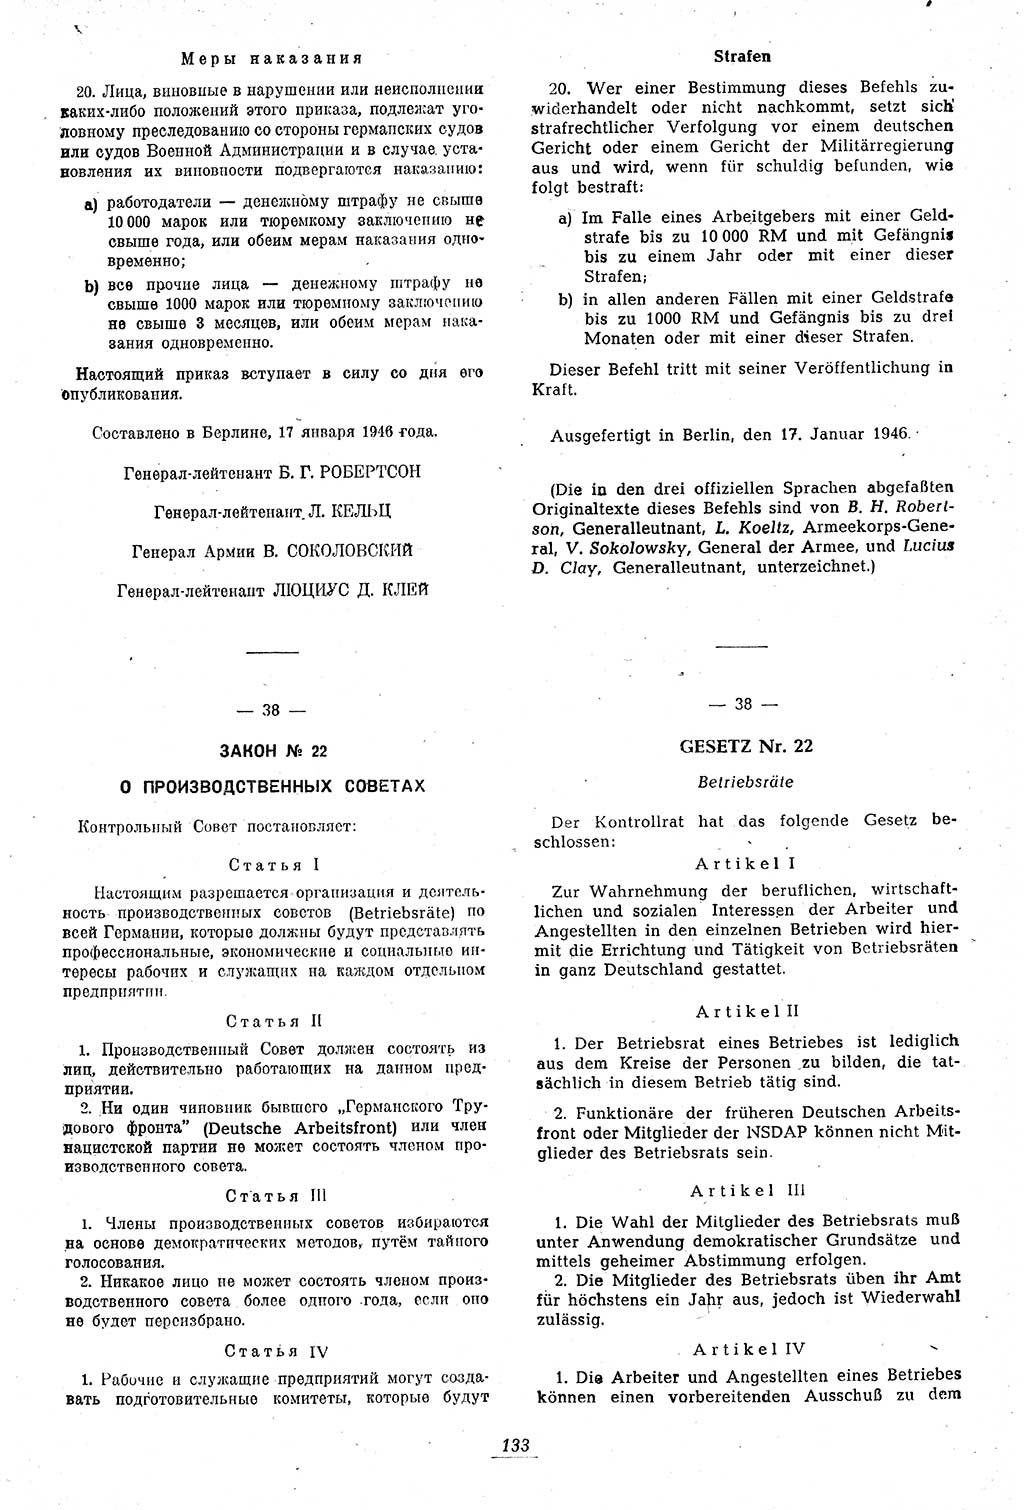 Amtsblatt des Kontrollrats (ABlKR) in Deutschland 1946, Seite 133/2 (ABlKR Dtl. 1946, S. 133/2)